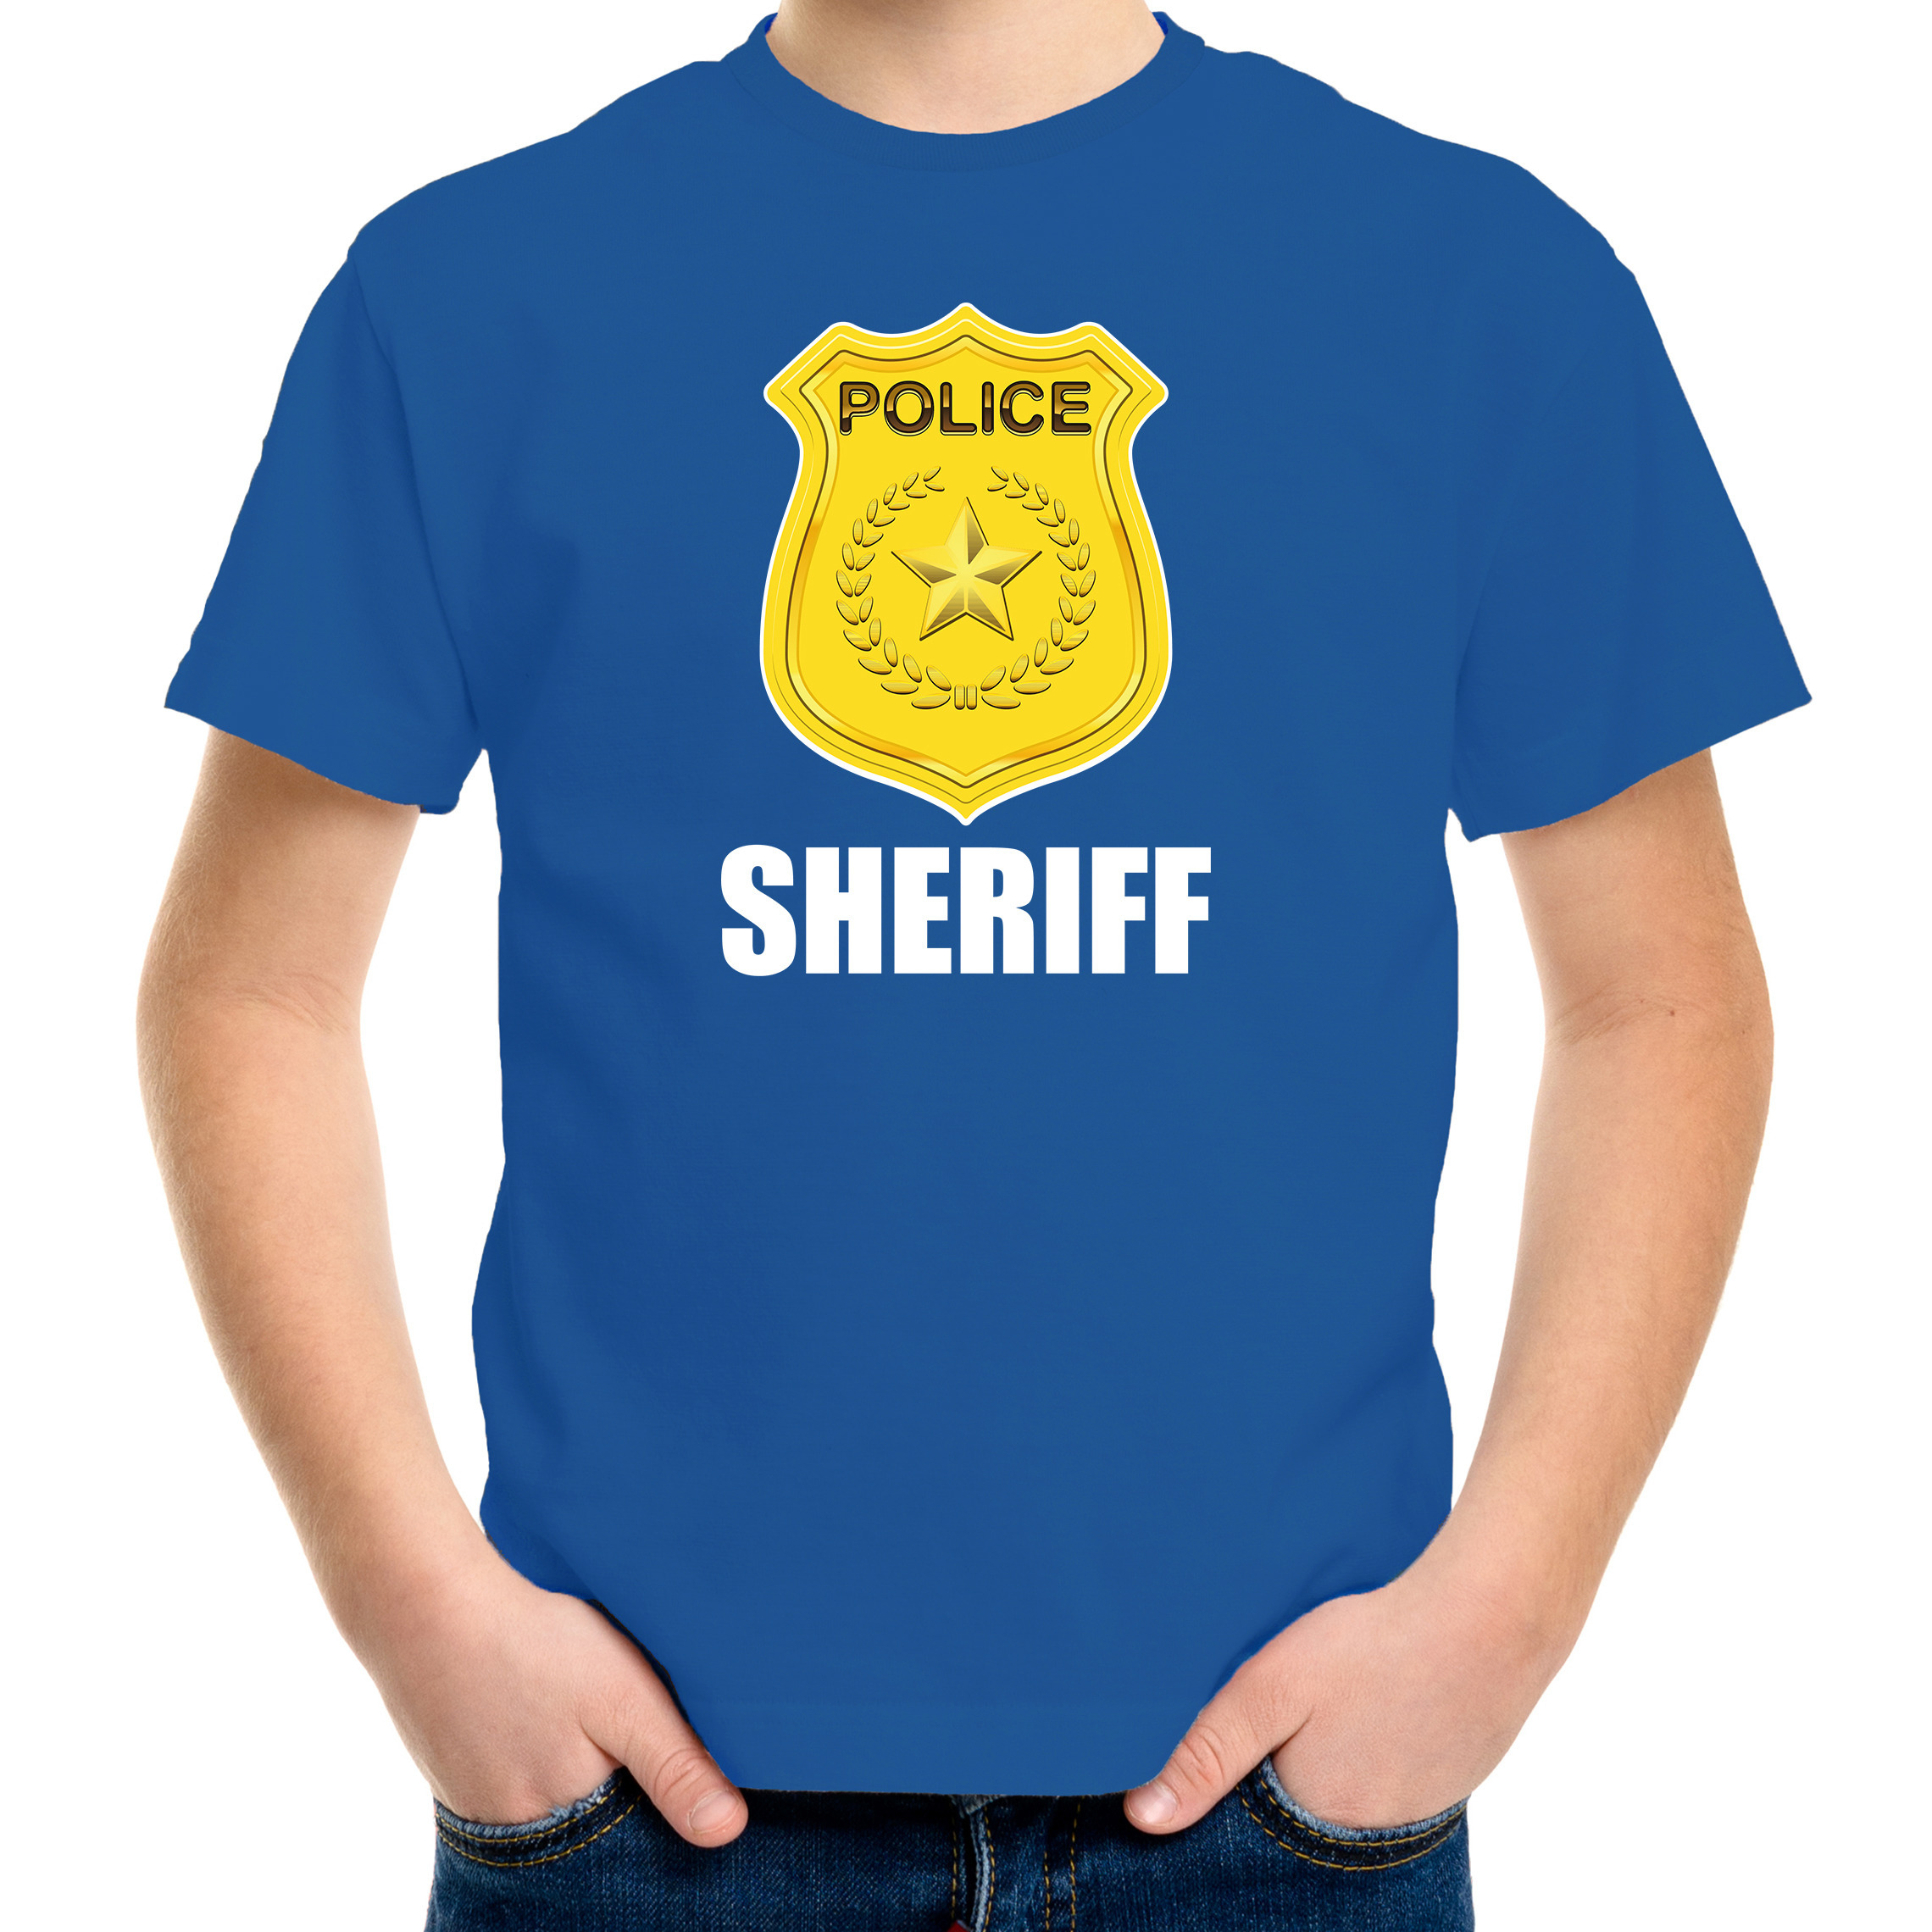 Sheriff police-politie embleem t-shirt blauw voor kinderen